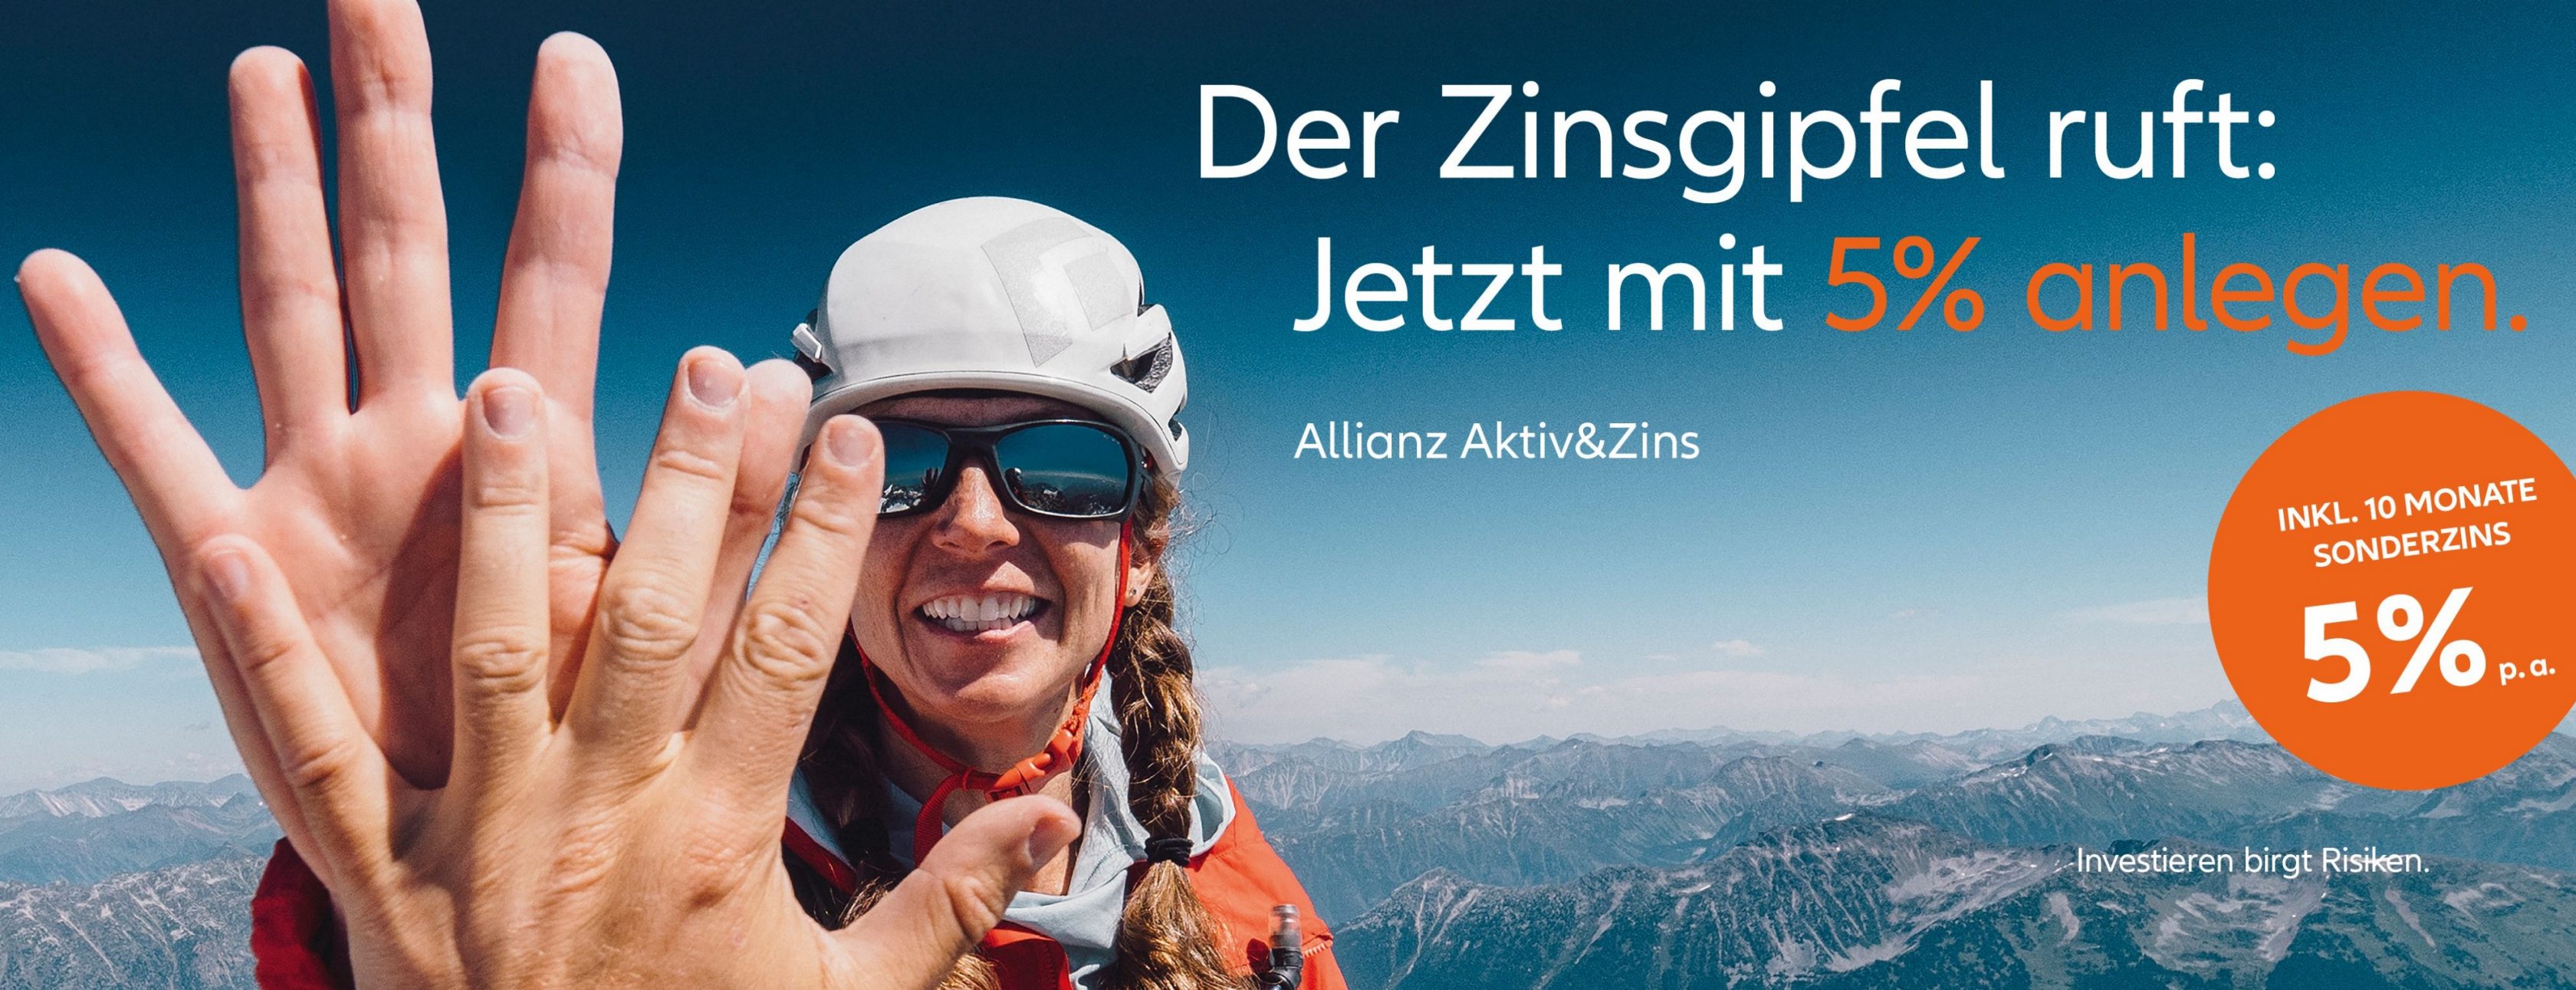 Allianz Versicherung Mirko Bunk Reichshof - Zinsgipfel